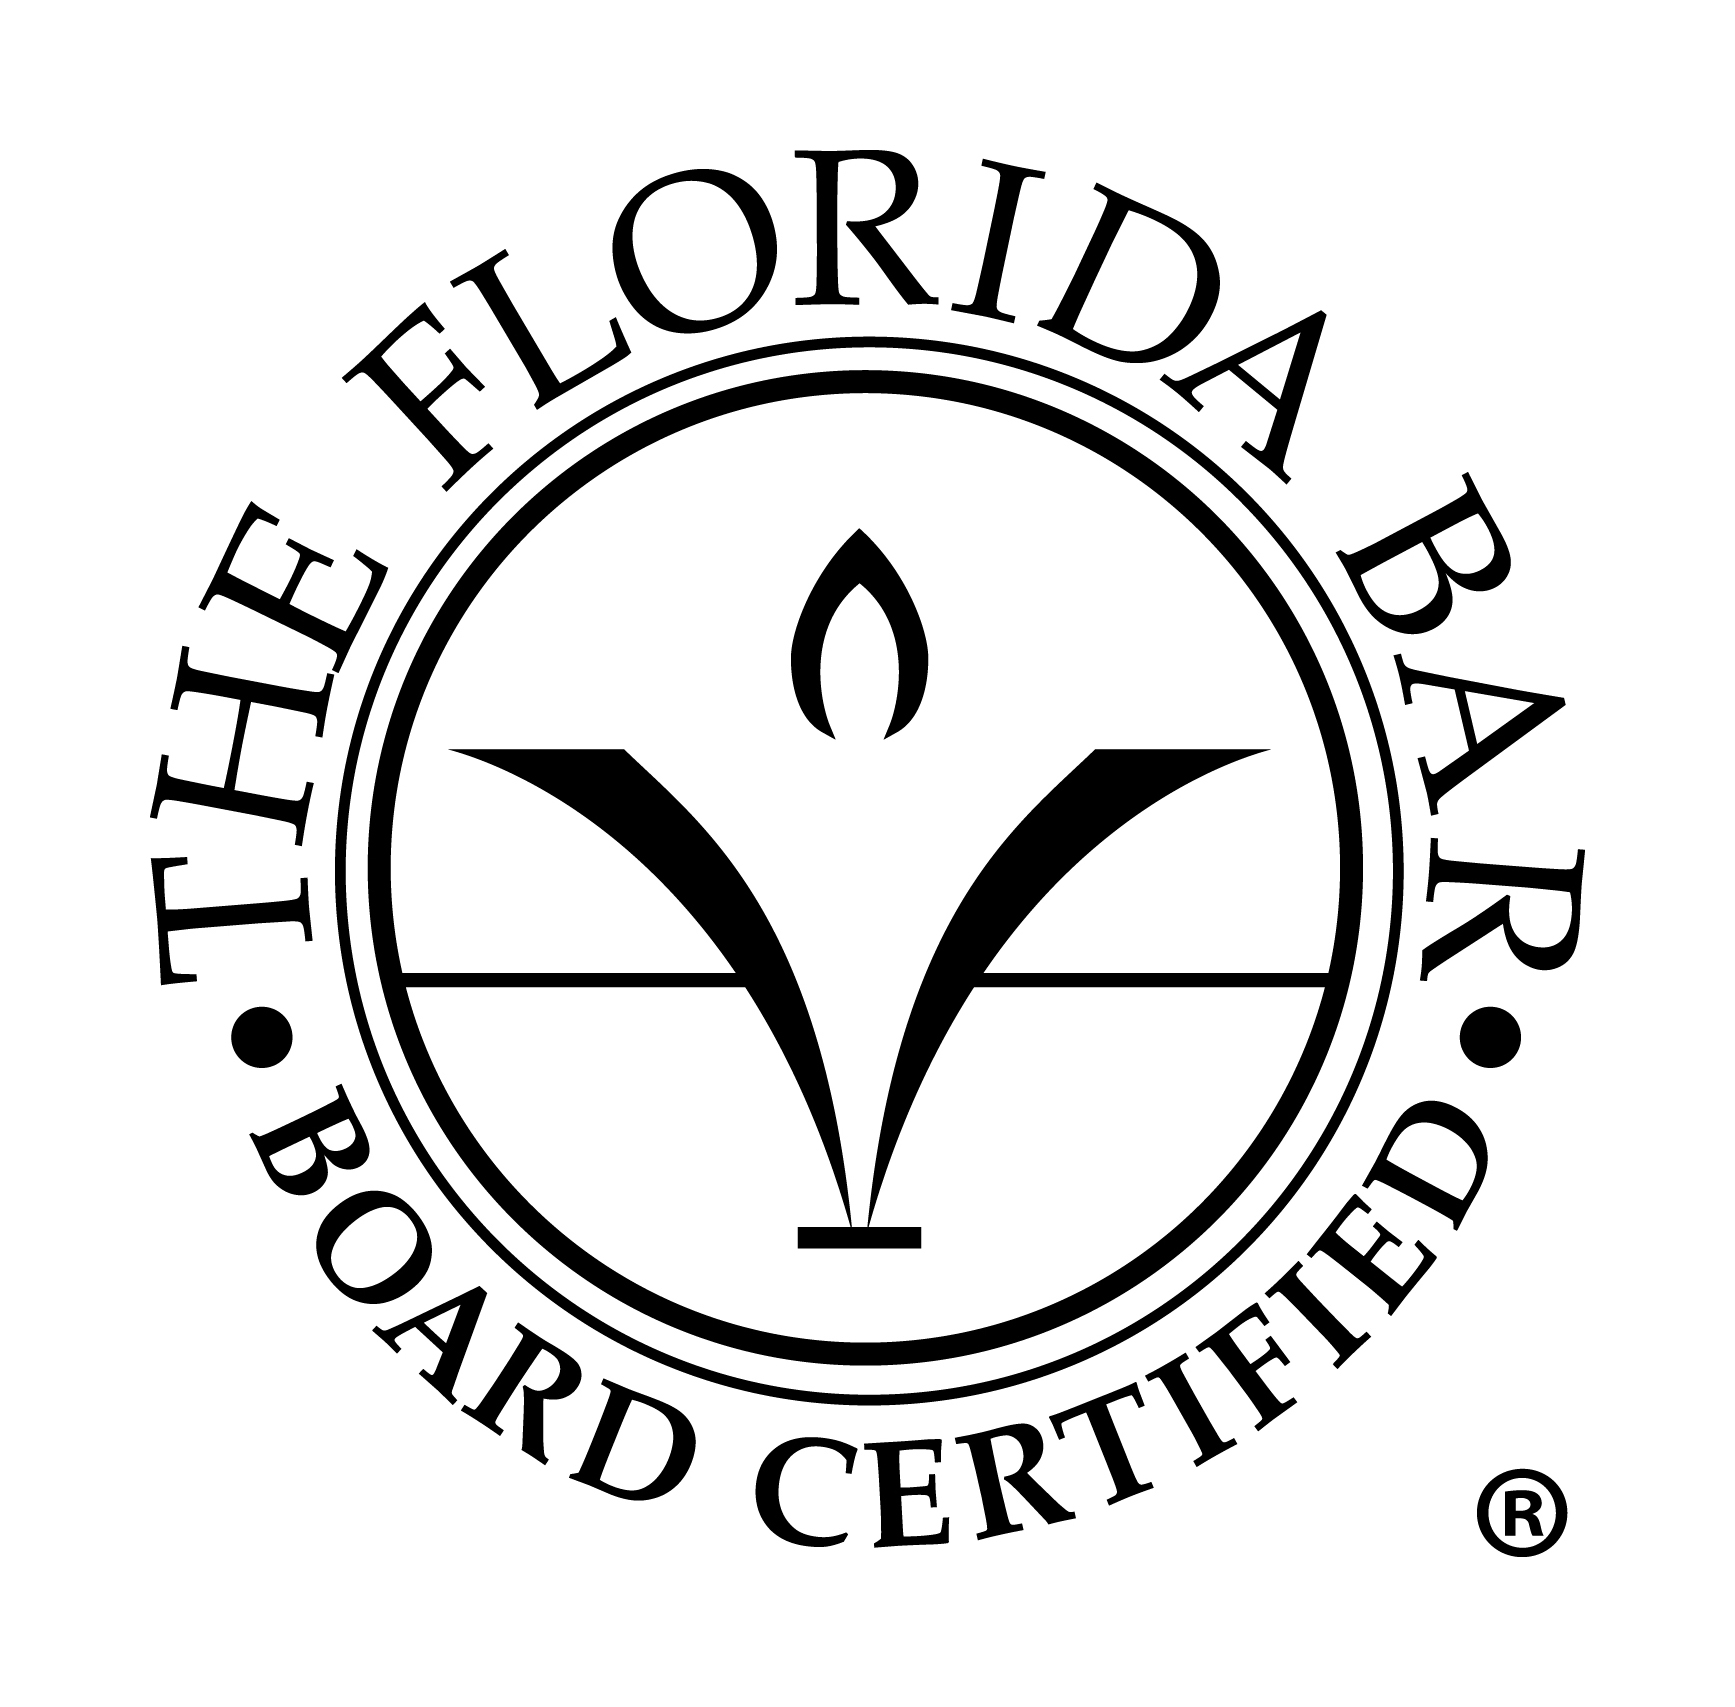 florida bar board certified logo